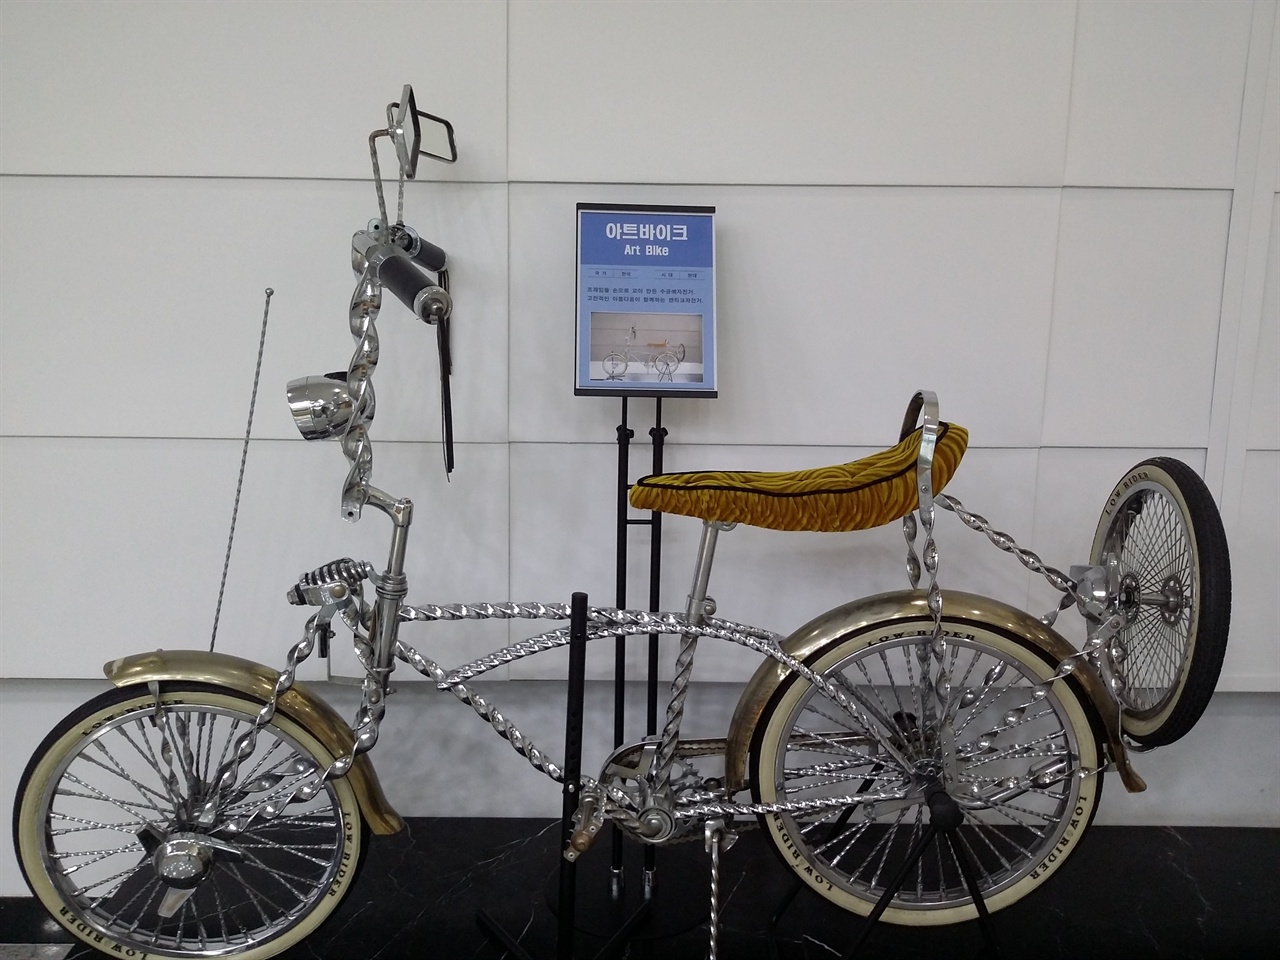 상주자전거박물관엔 톡특한 모양의 자전거가 많이 전시돼 있다.